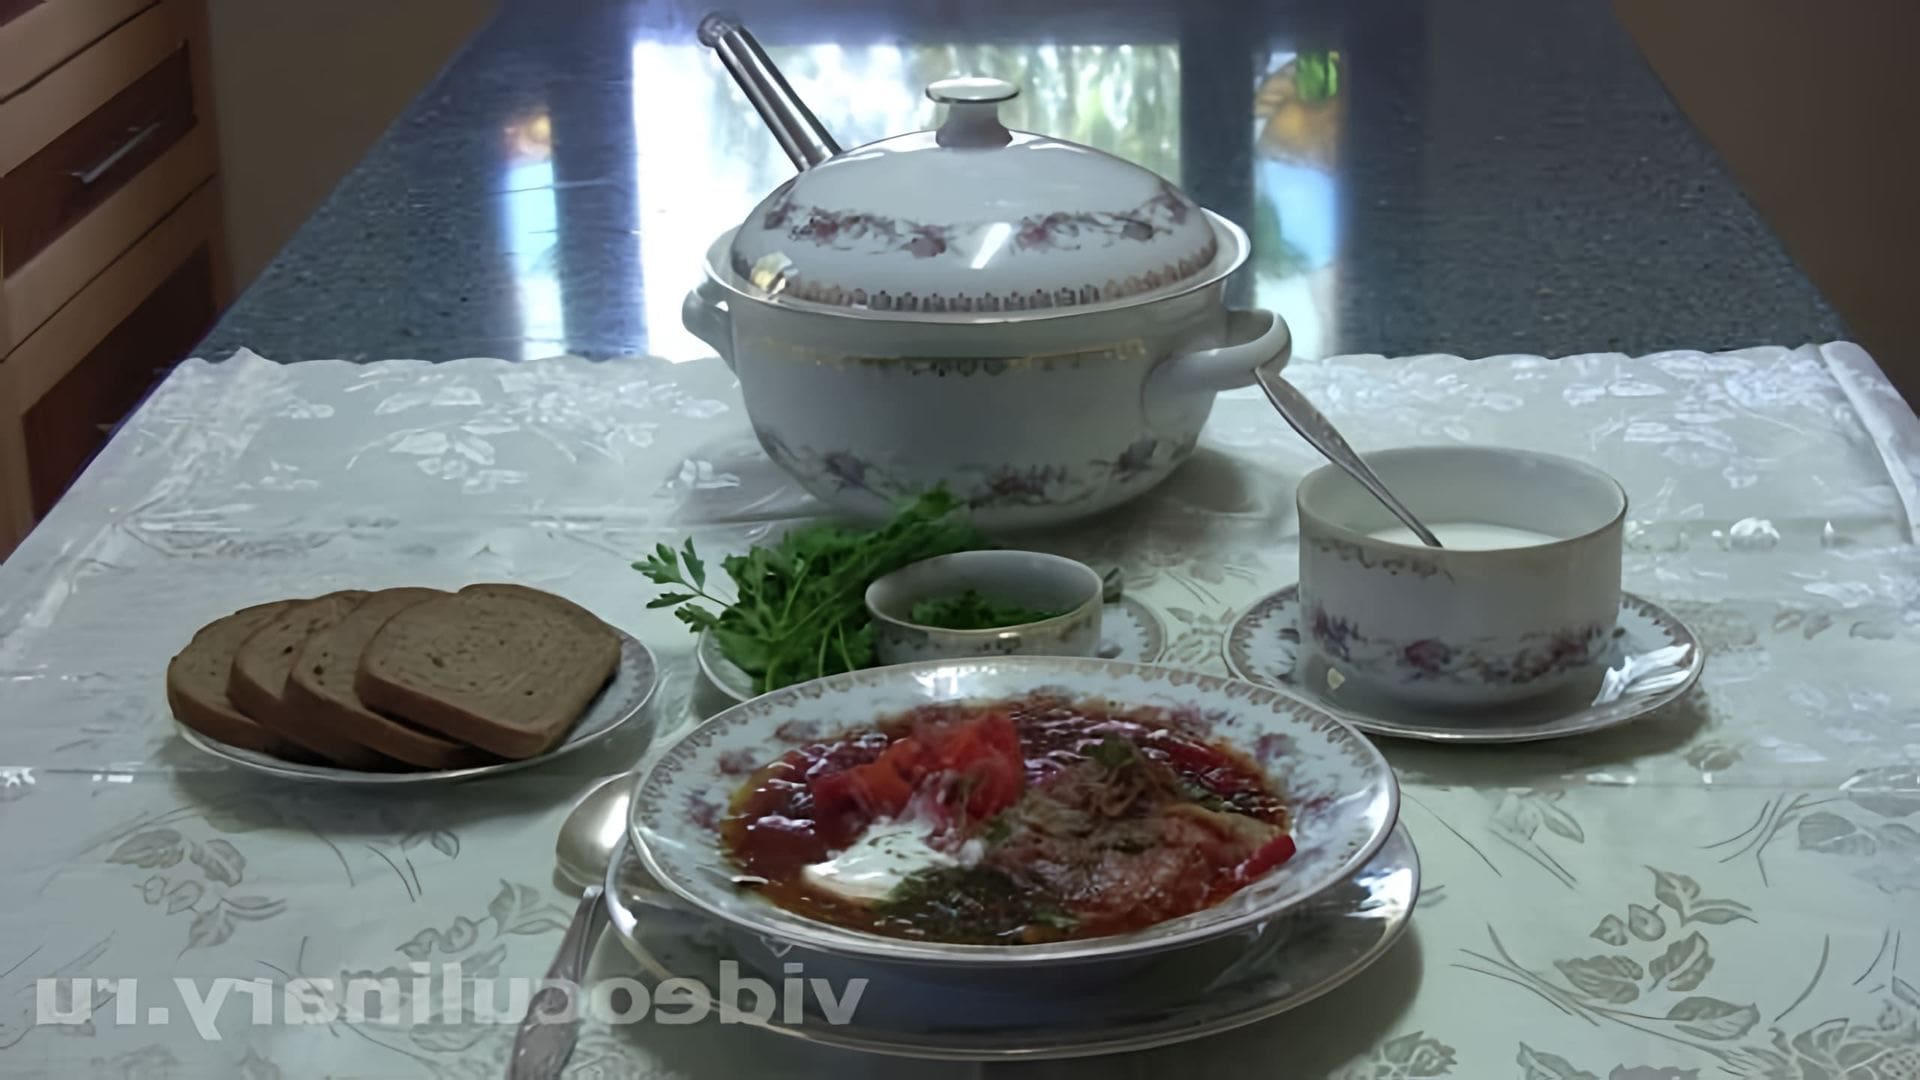 В этом видео-ролике "Украинский борщ - Рецепт Бабушки Эммы" демонстрируется процесс приготовления традиционного украинского блюда - борща